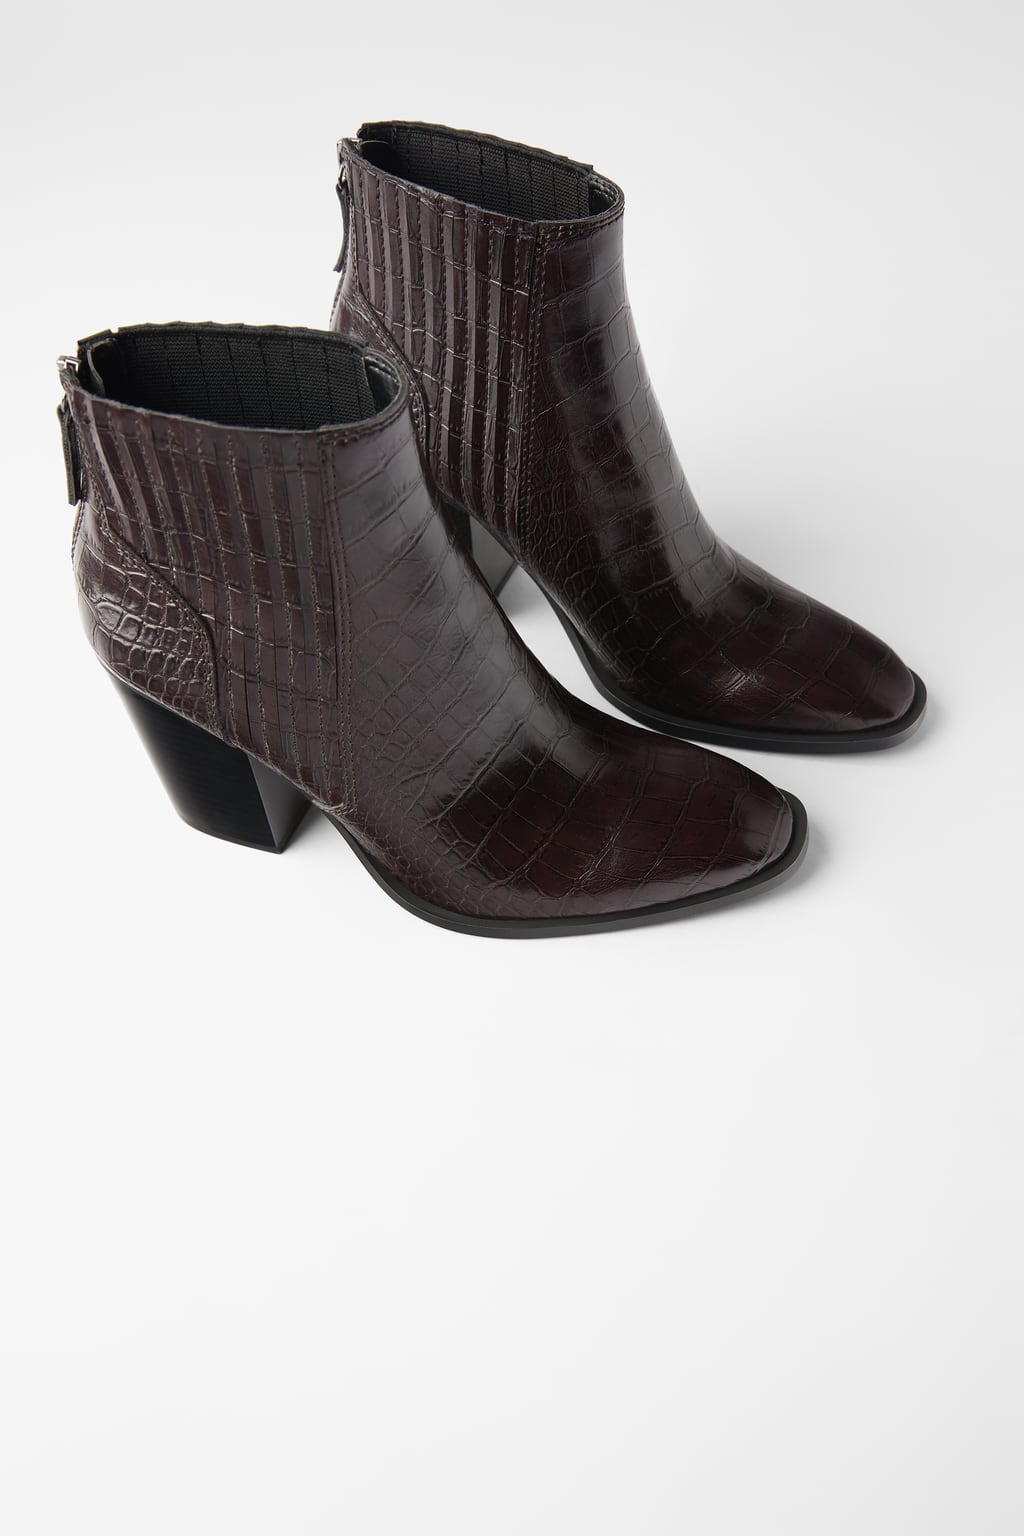 Botines de mujer Zara 2019, las tendencias del otoño en calzado. Cowboy,  camperos y metalizados - Modalia.es